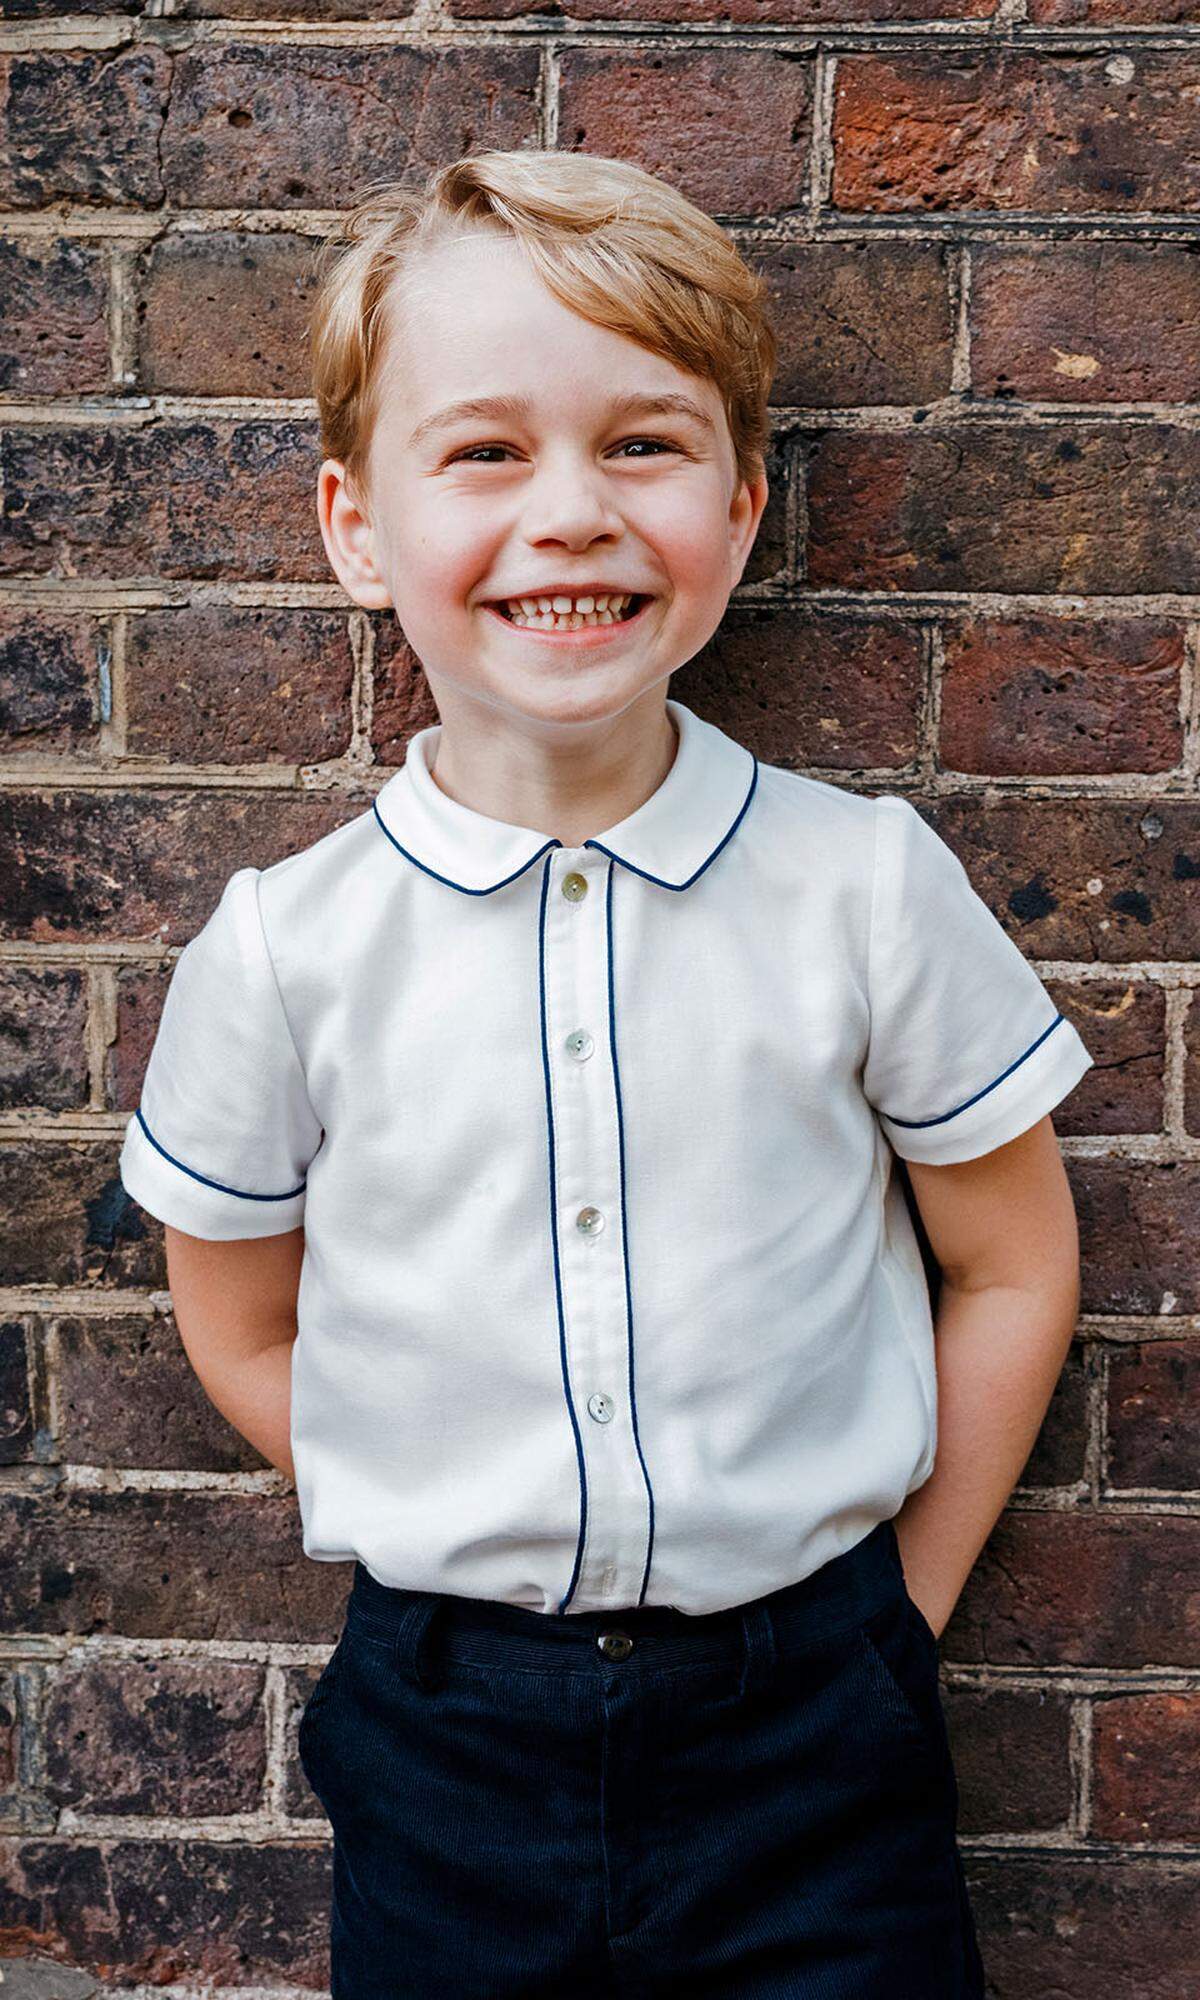 Prinz George ist der jüngste Neuzugang auf der Liste - im wahrsten Sinne. Mit seinem Look aus Shorts, ärmellosen Pullovern oder kurzen Shirts und Kniestrümpfen konnte der fünfjährige Mini-Royal offenbar überzeugen. Da darf sich auch Mama Catherine freuen - und zwar doppelt.